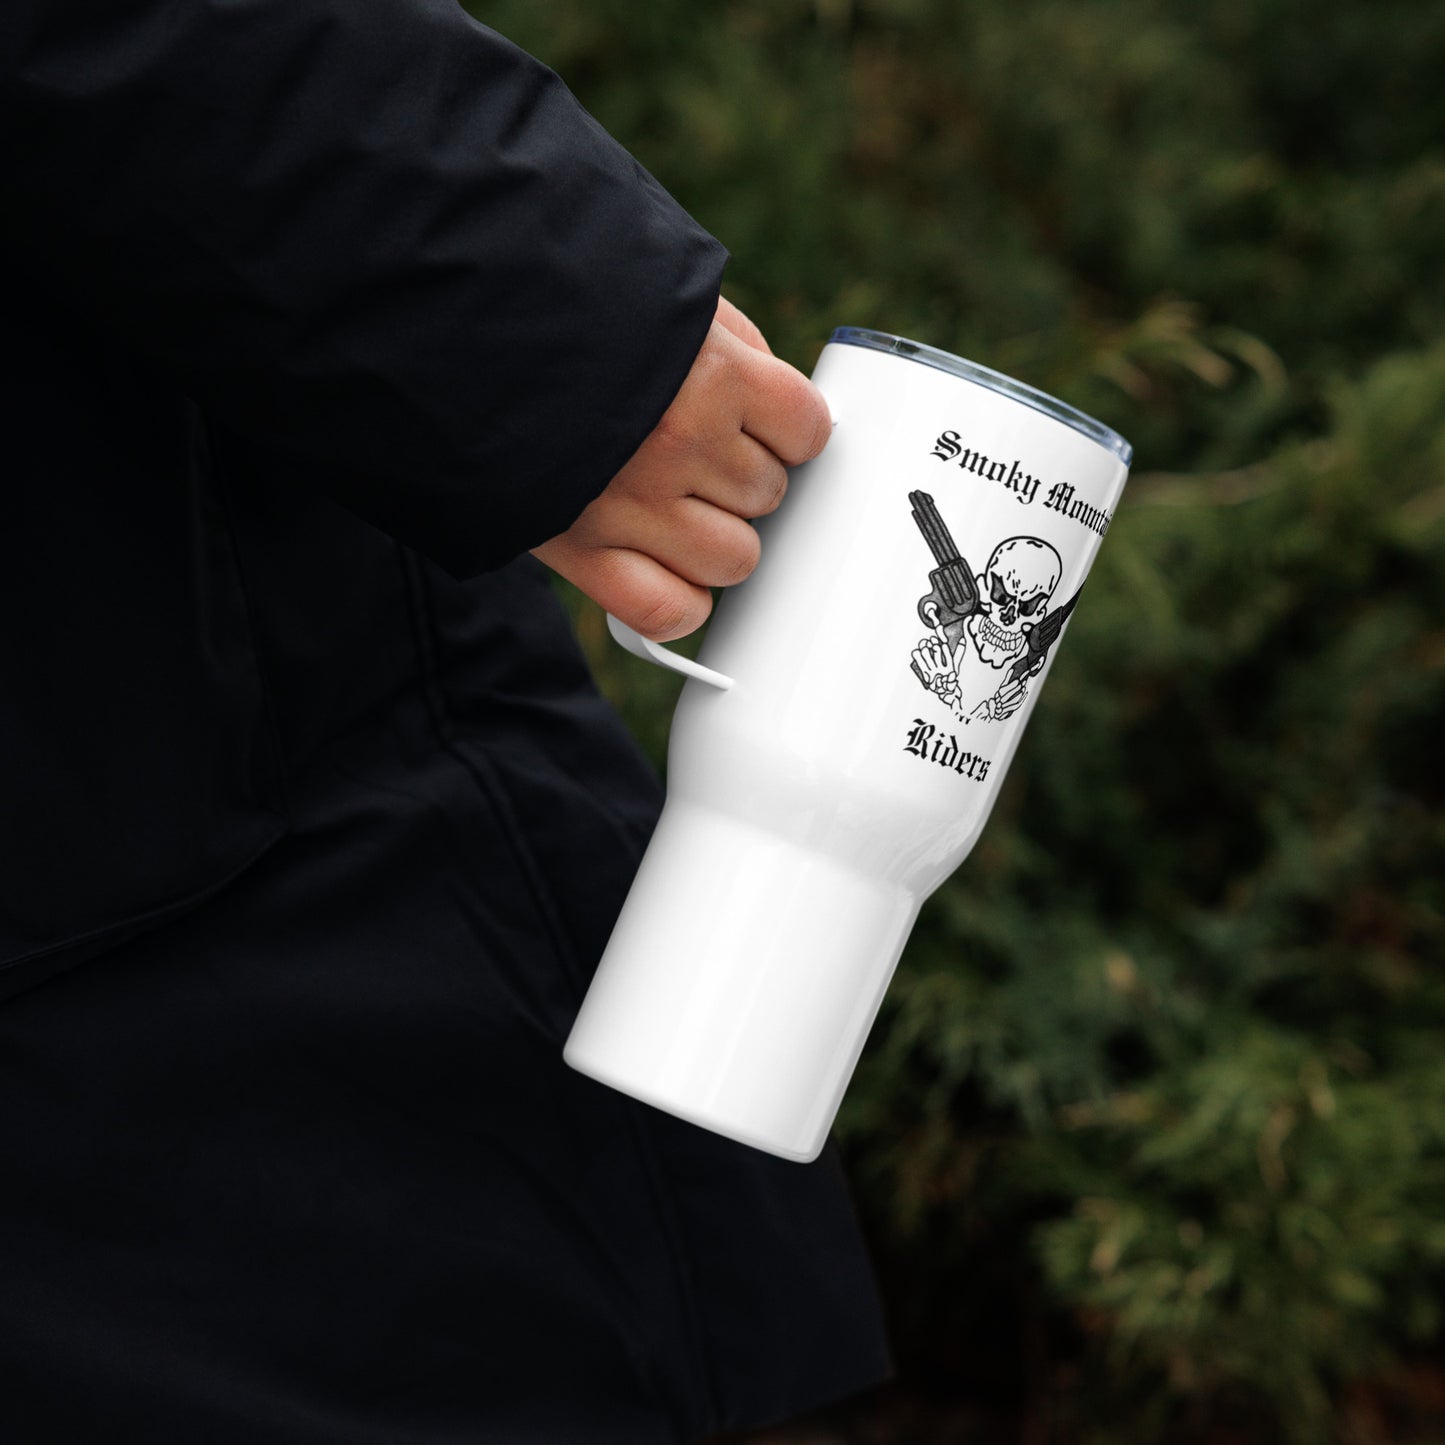 Smoky Mountain Riders Travel Mug with a Handle